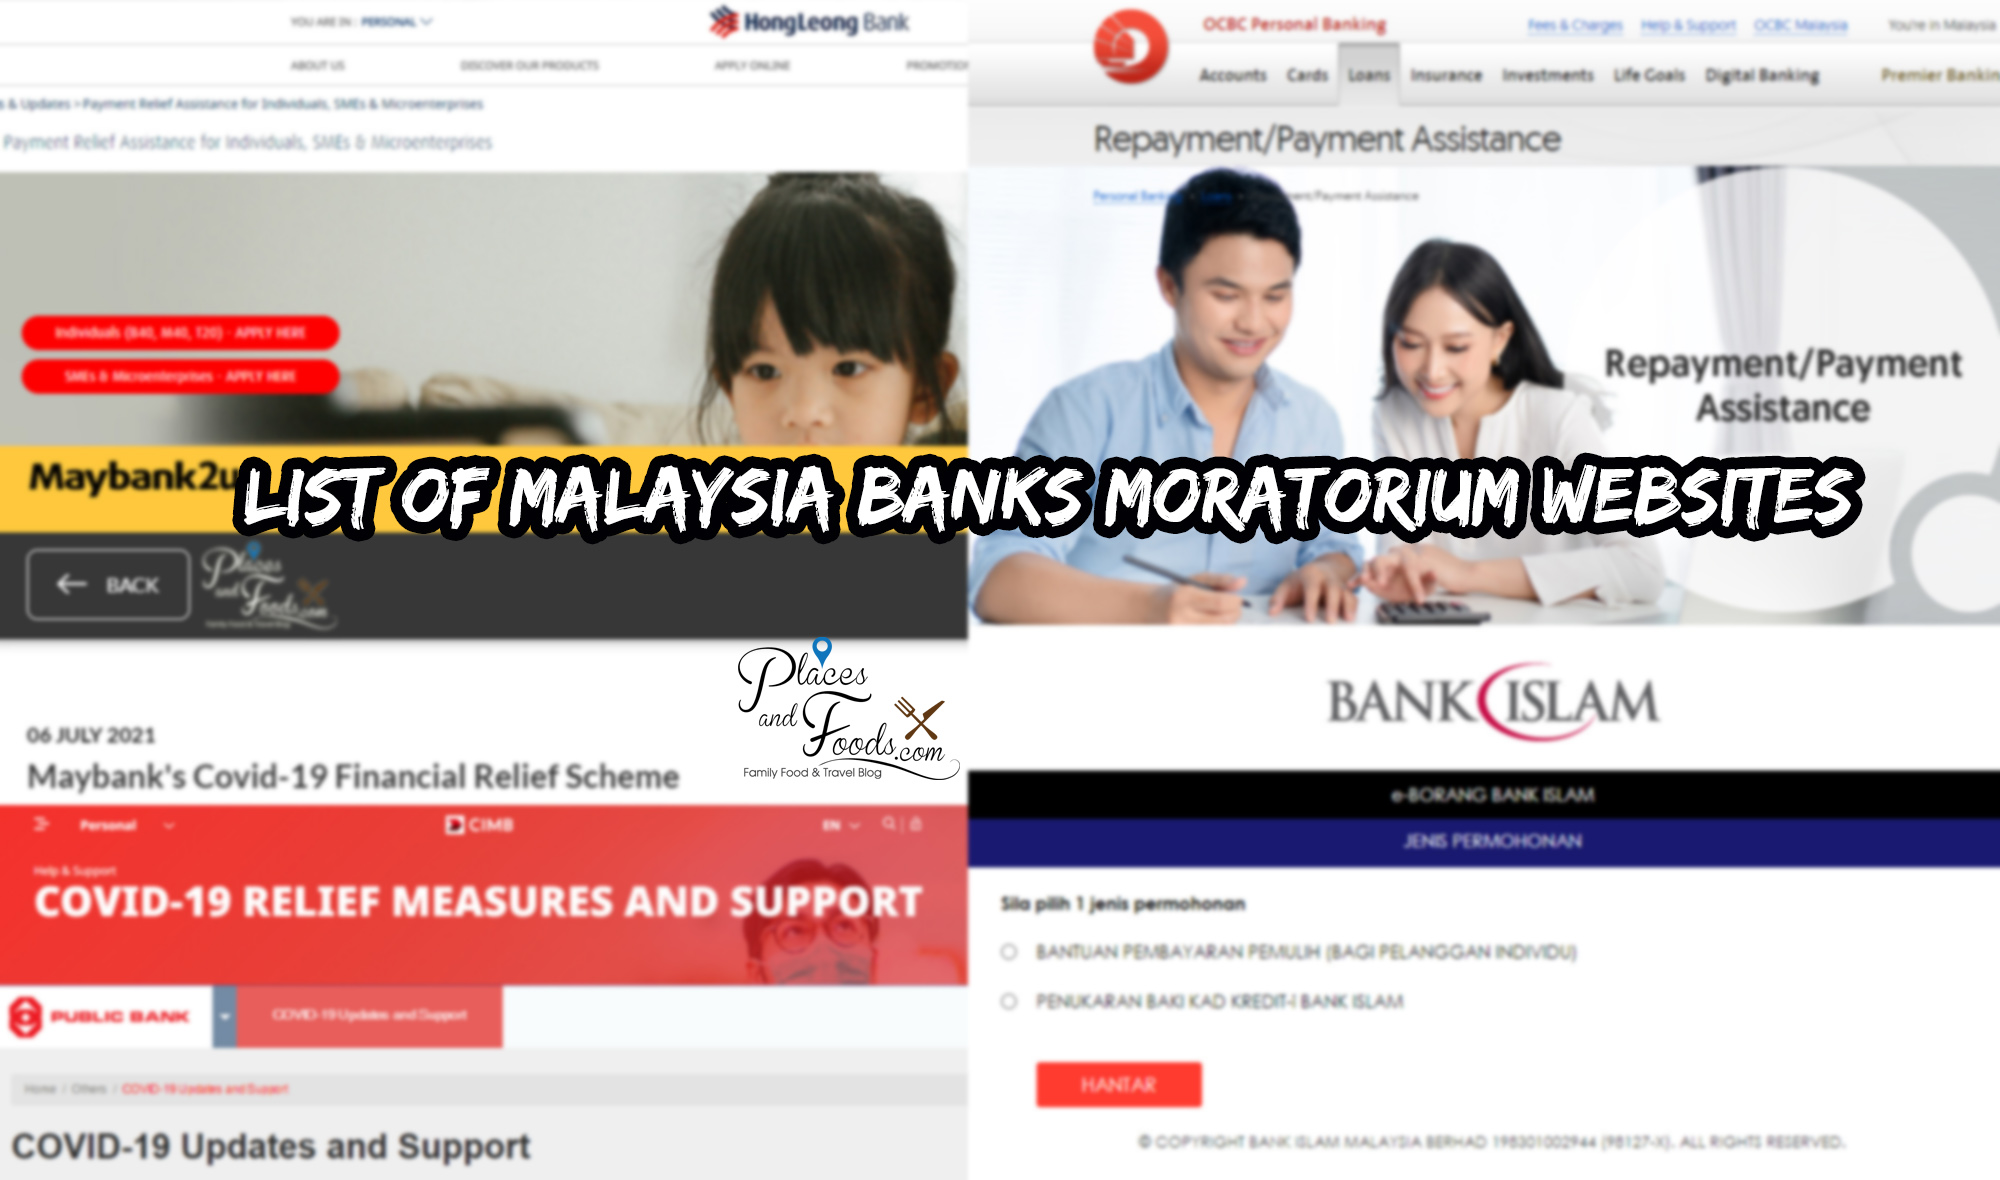 Moratorium affin bank 2021